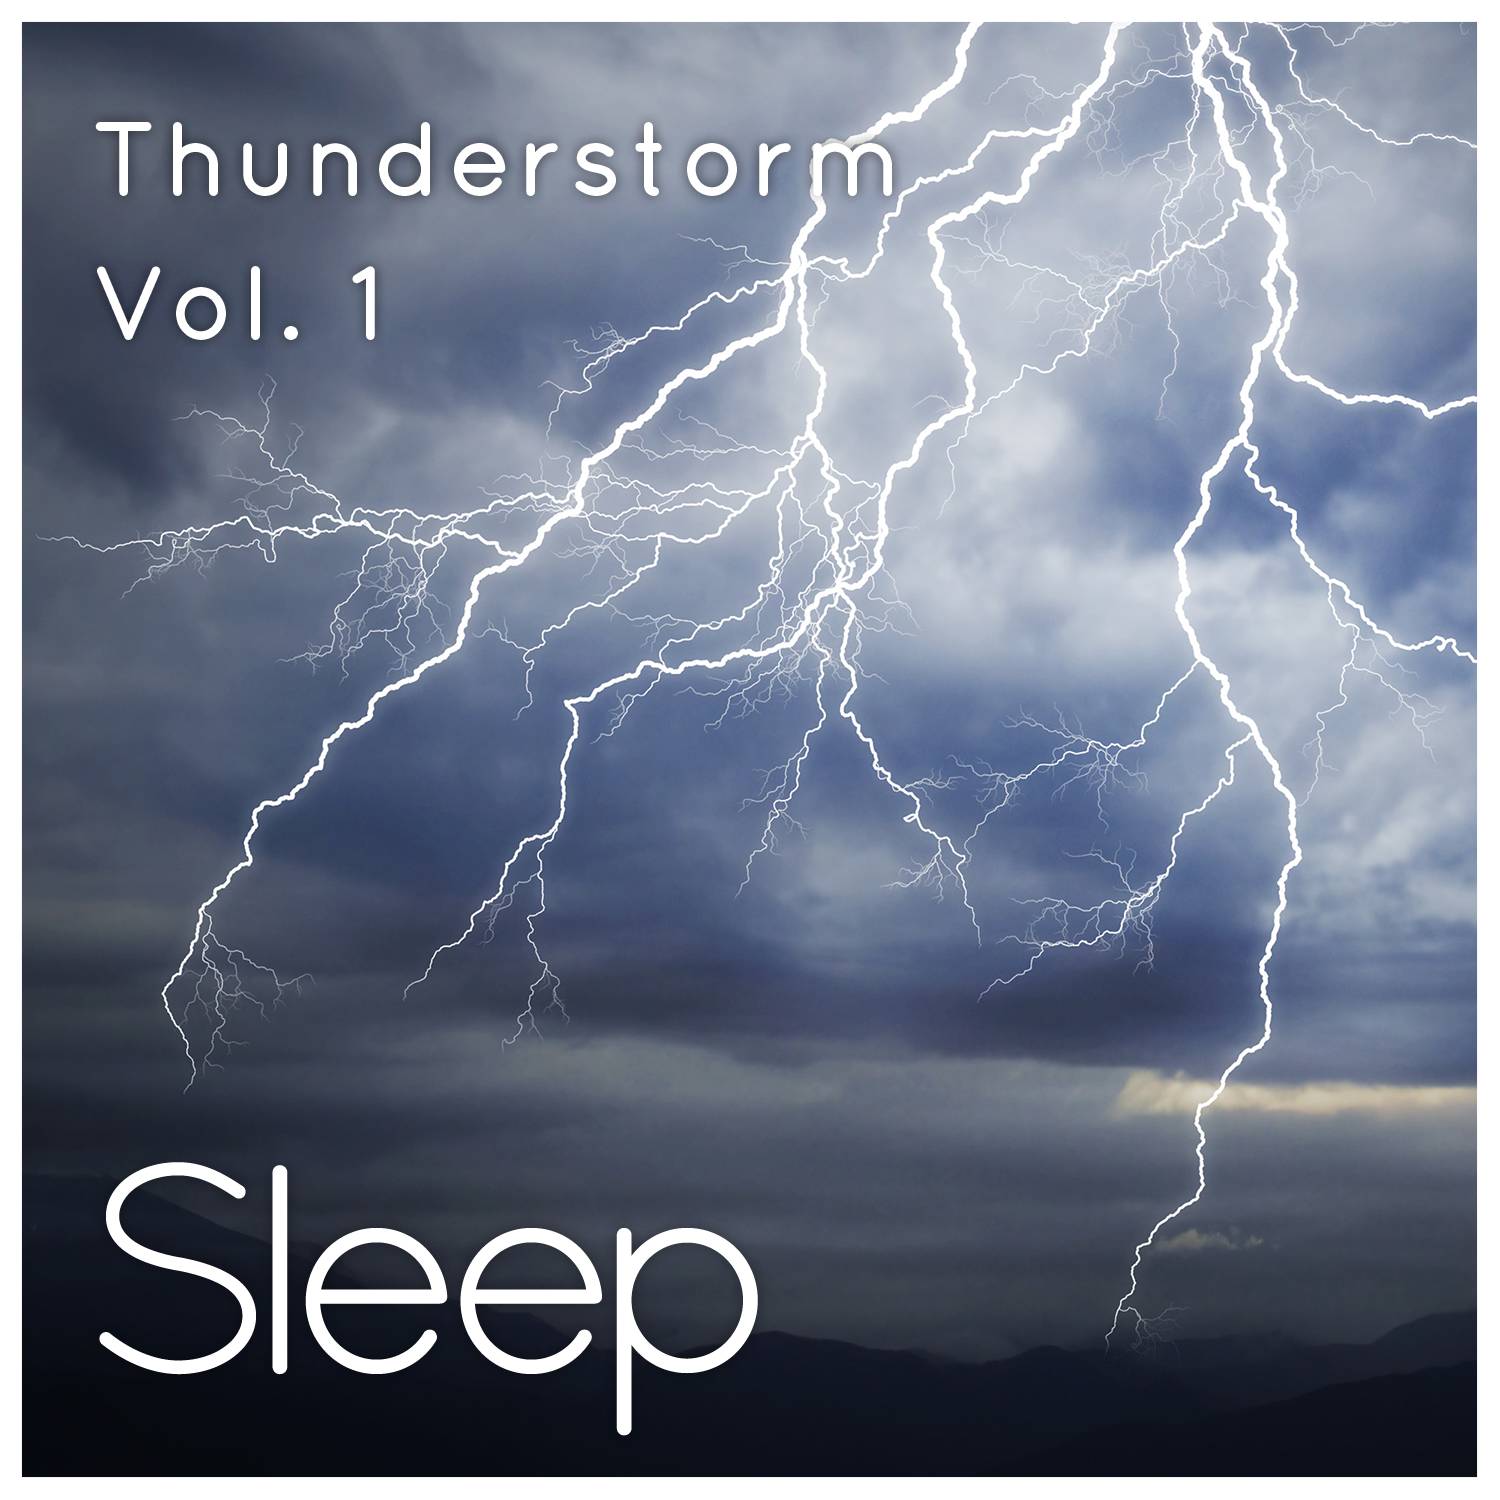 Thunderstorm for Relaxing Sleep, Pt. 3